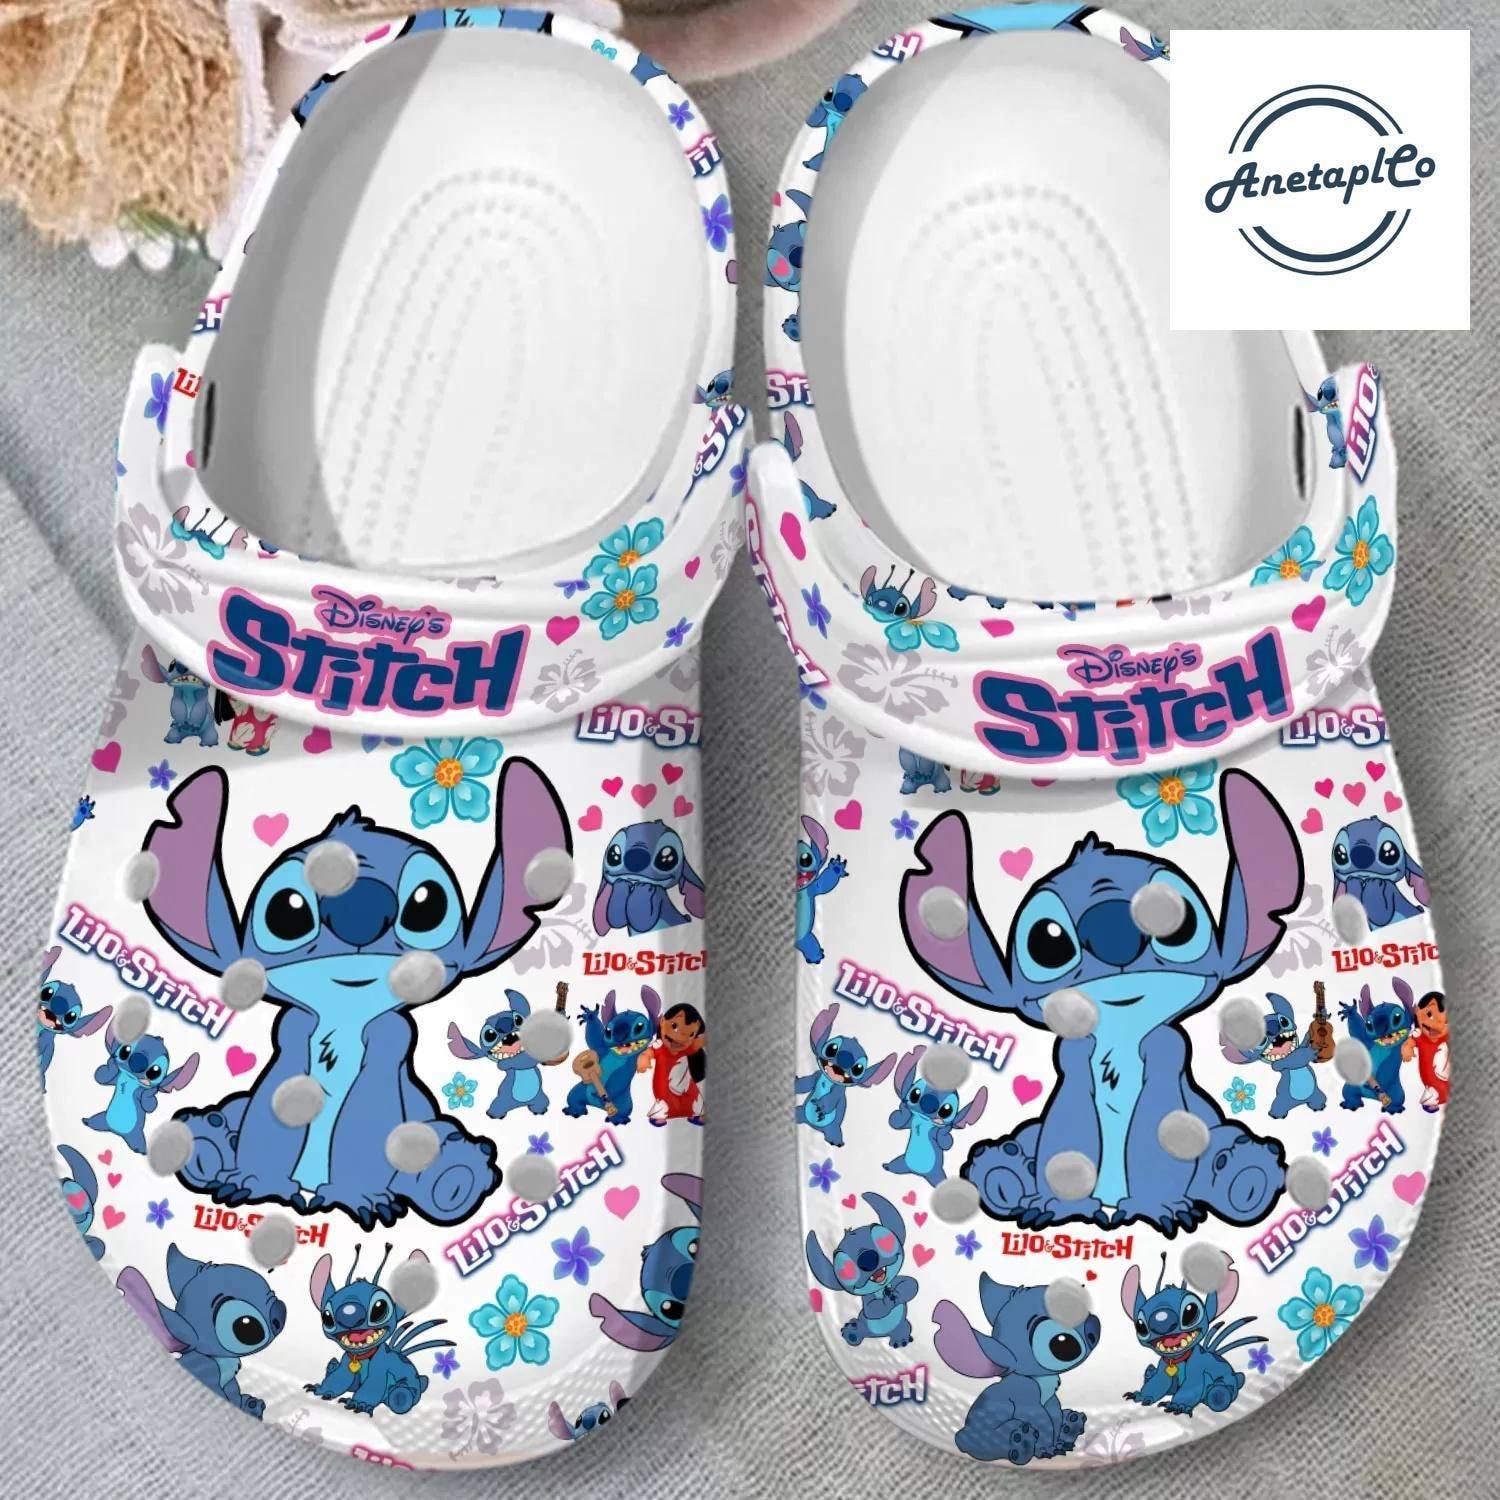 Lilo Stitch Floral Personalized Disney Clogs Movie Shoes Women Men Sandals